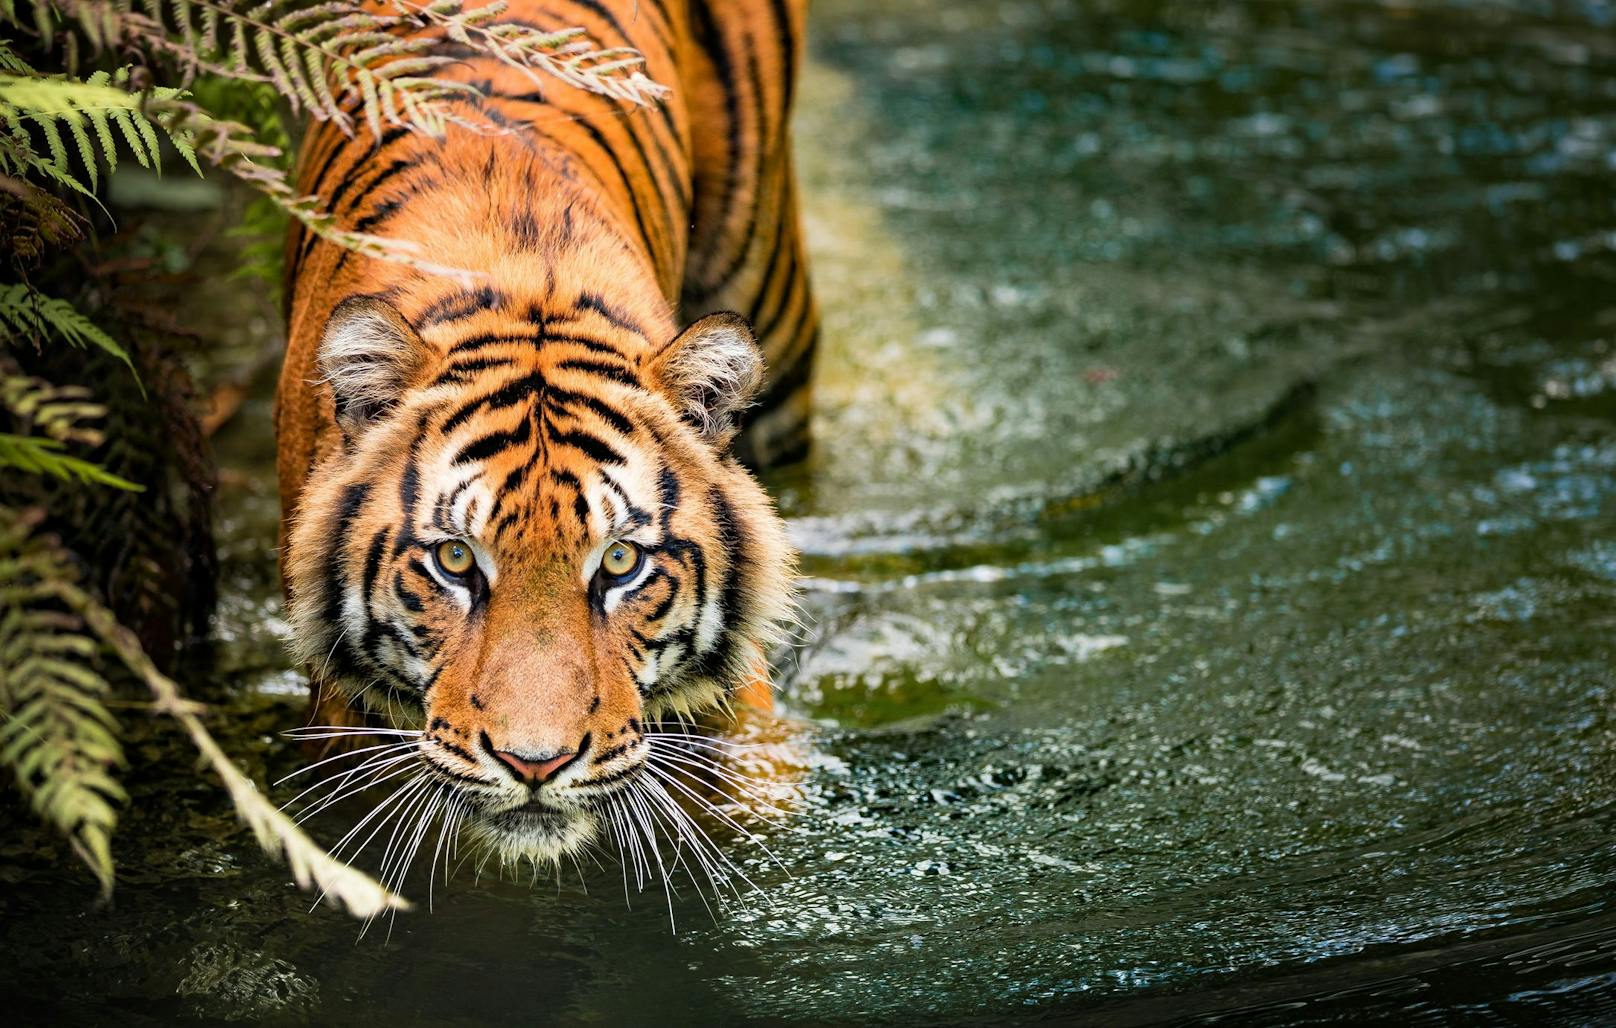 Tiger tötete neun Menschen – 200 Leute gingen zur Jagd